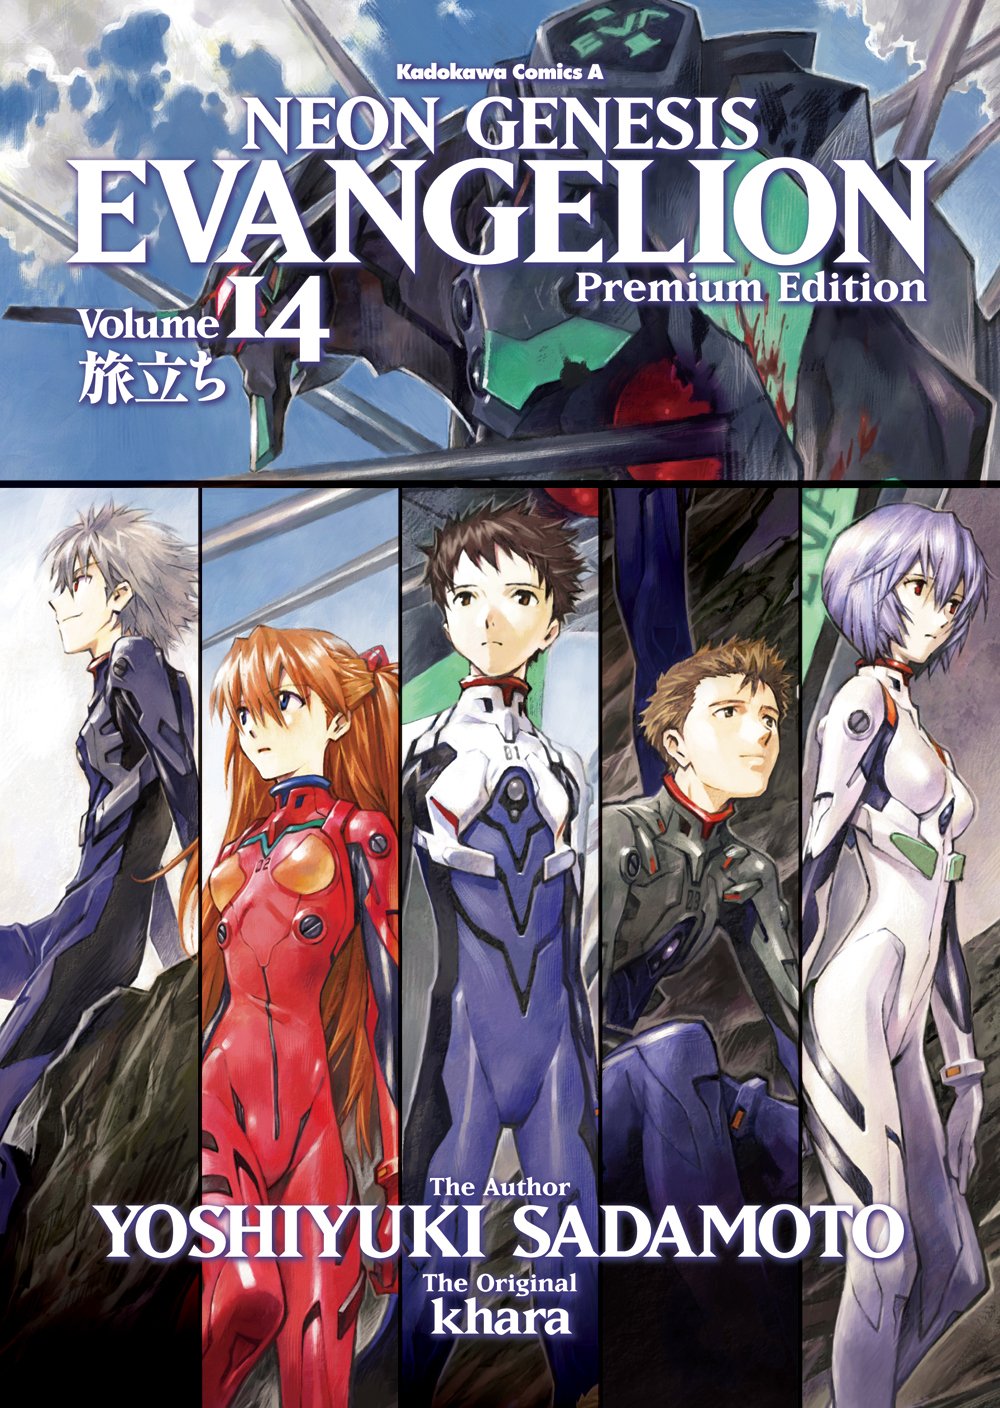 Neon Genesis Evangelion Band 14 Premium Limited Edition